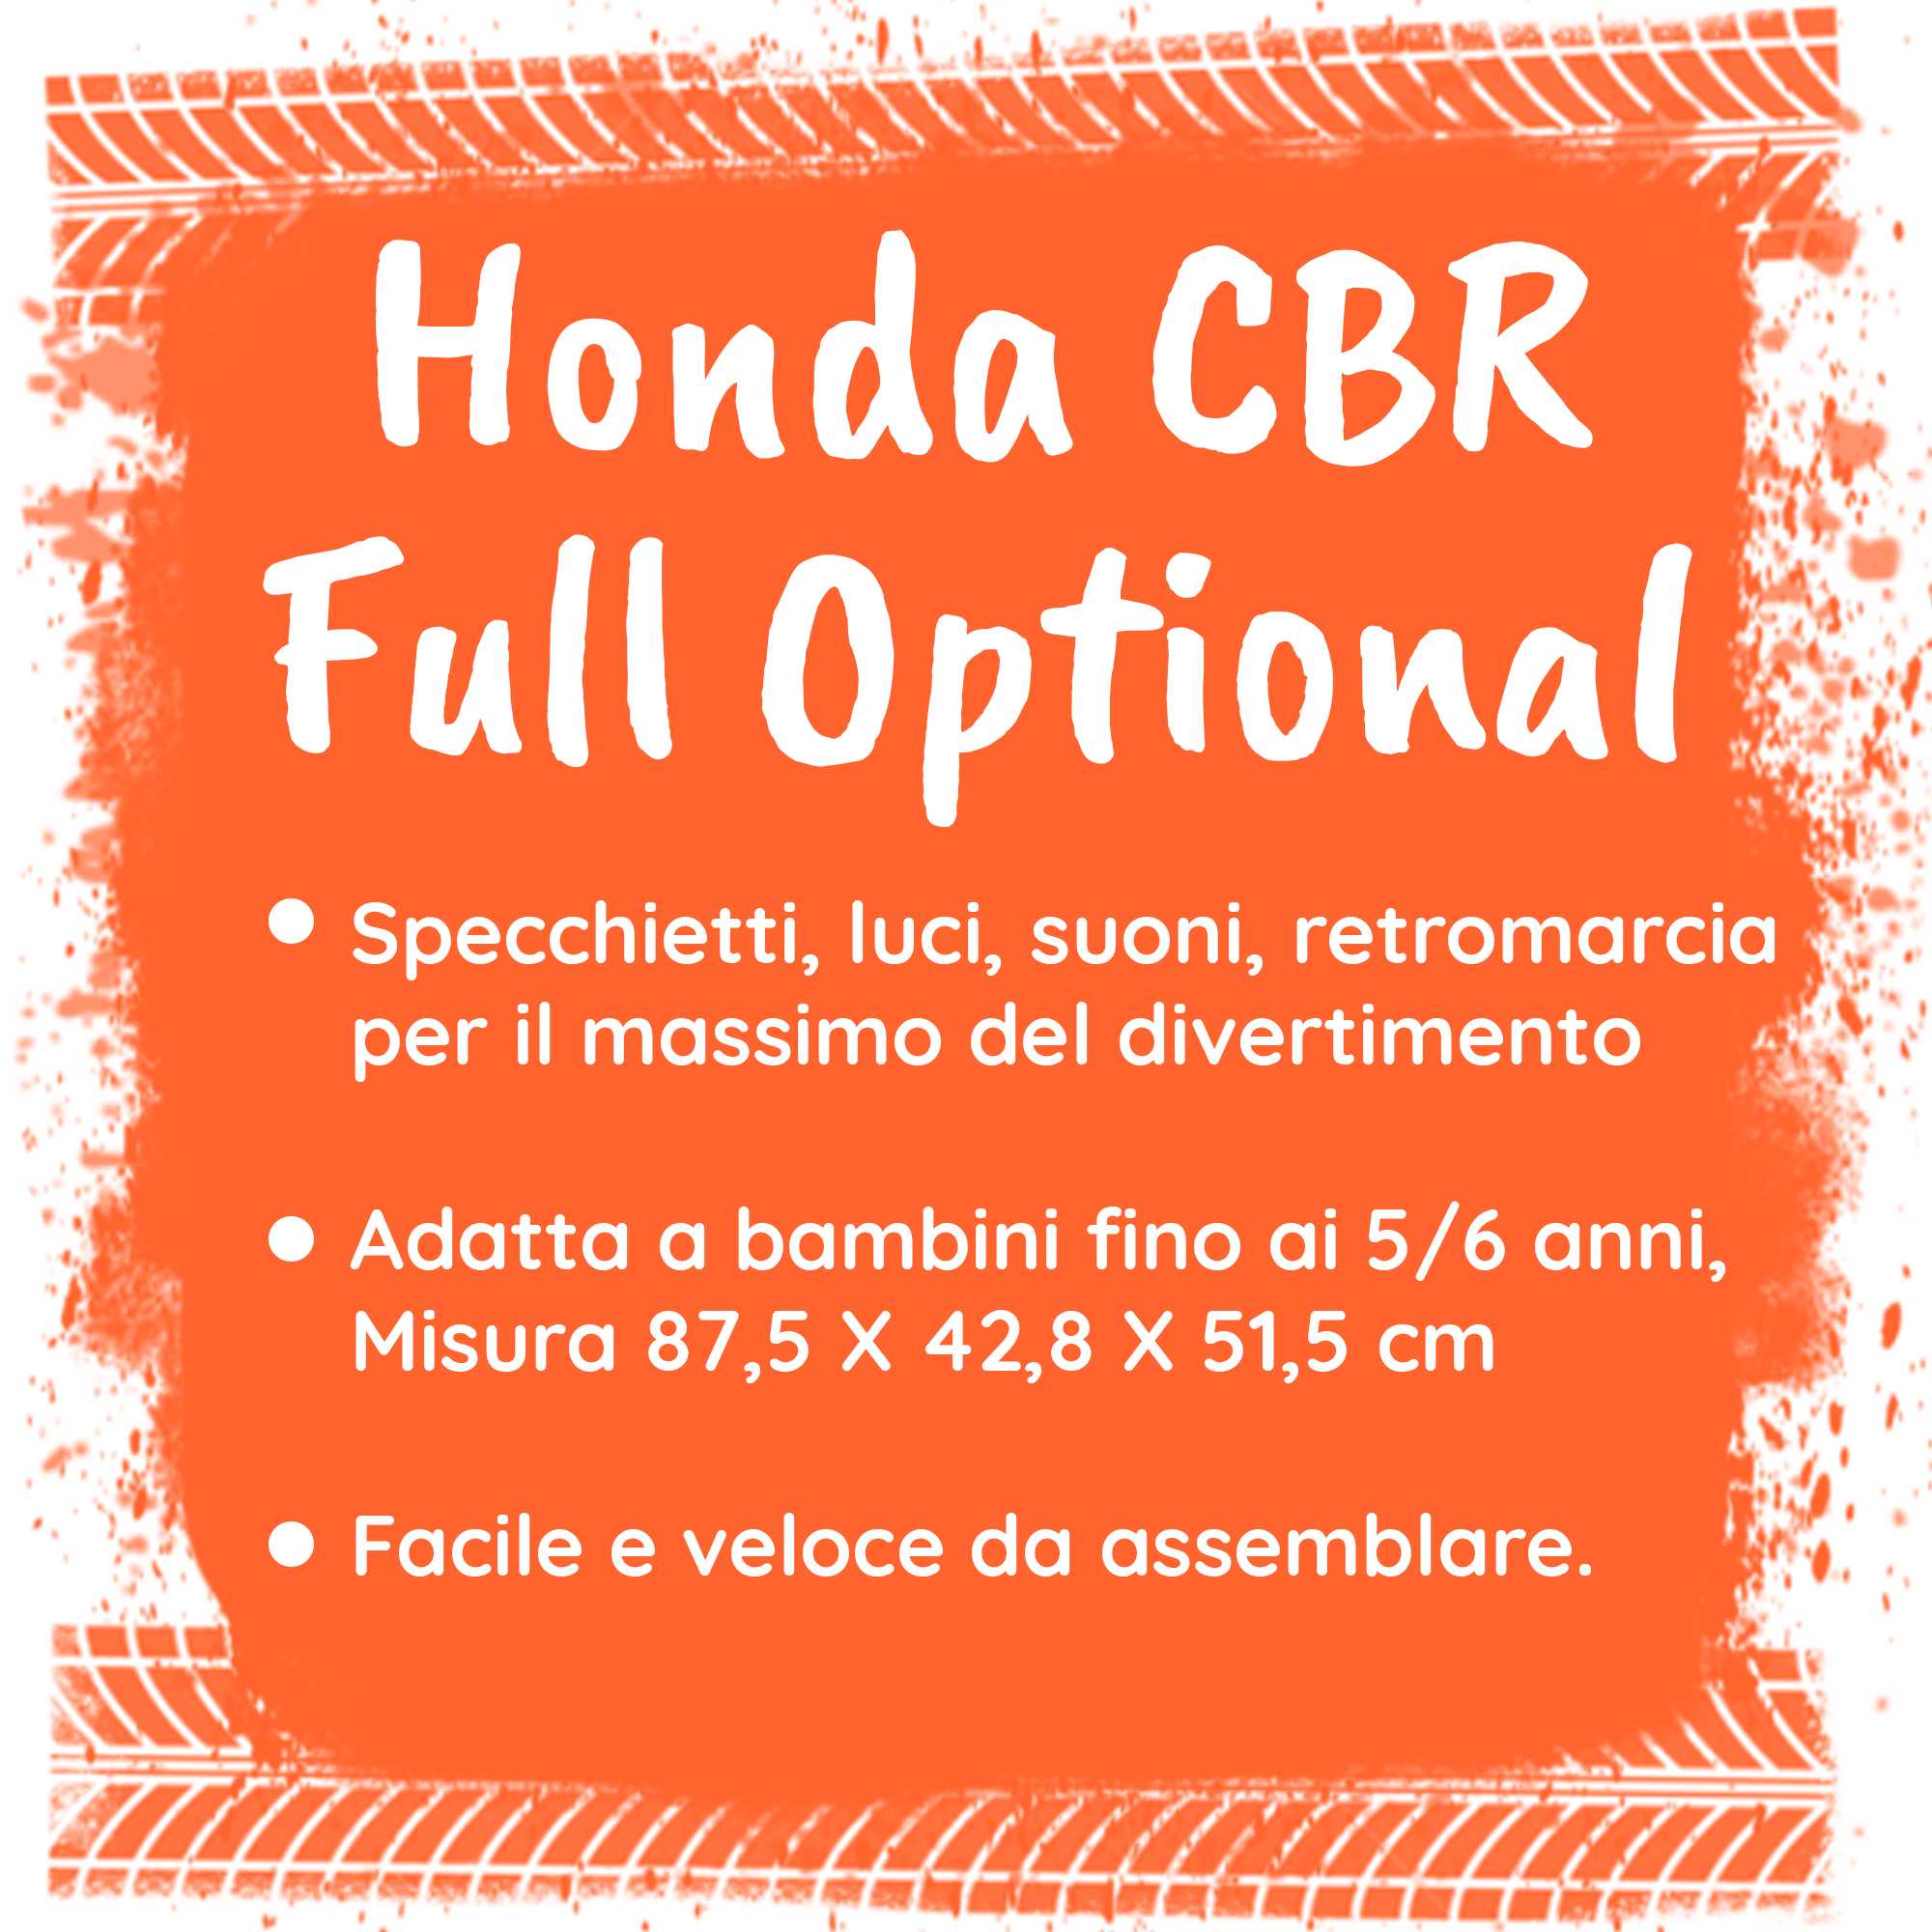 Honda CBR 1000 RR full optional